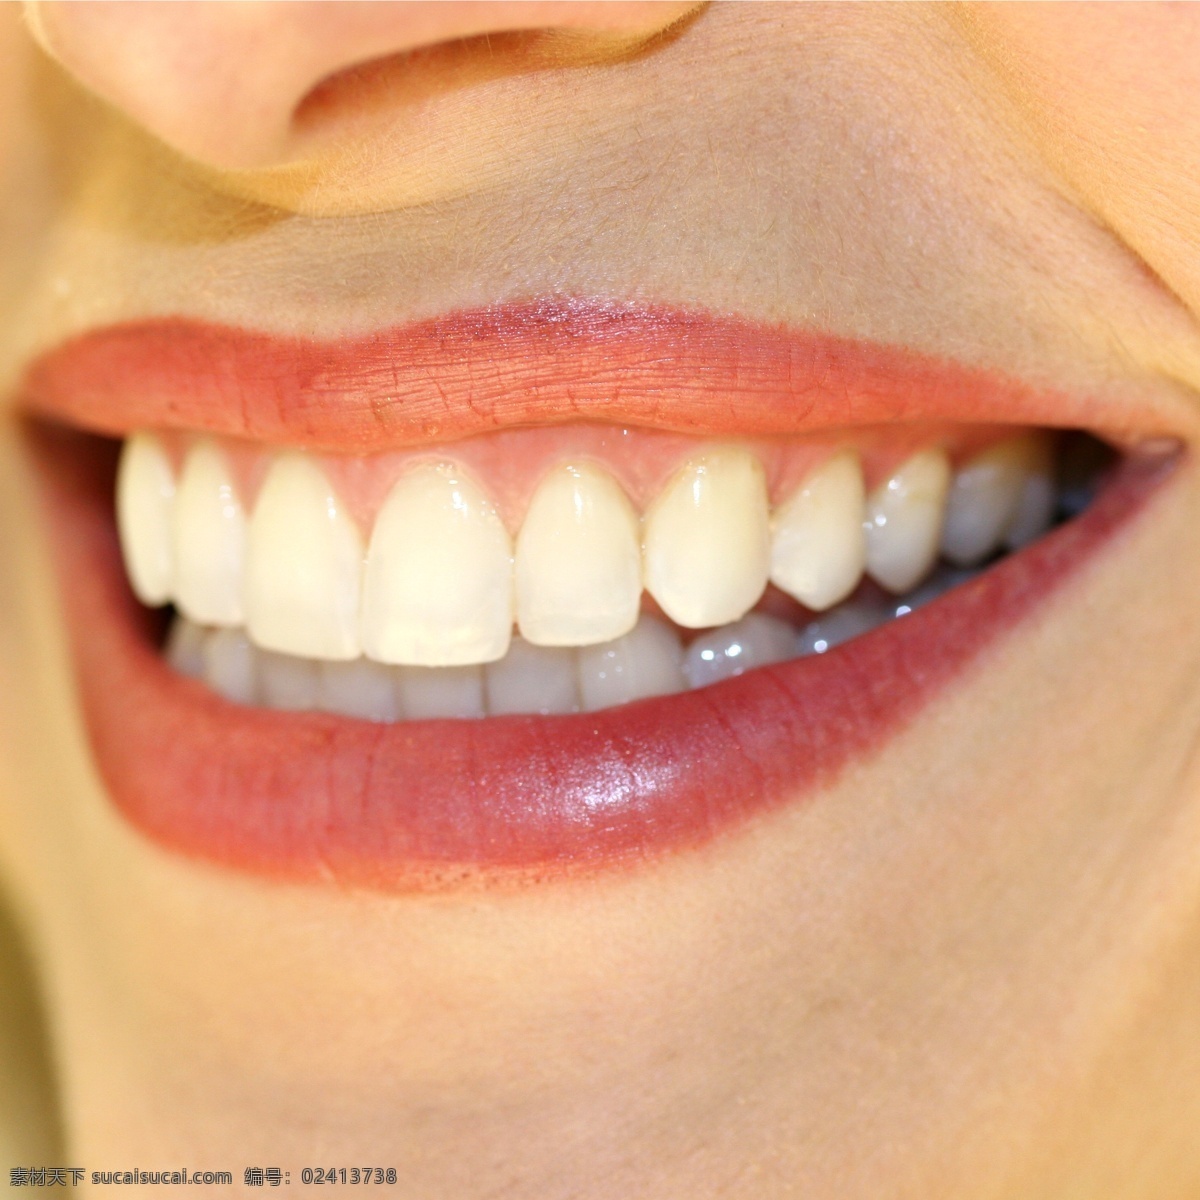 洁白 牙齿 健康 干净 健齿 洁白牙齿 咧嘴 微笑 人体器官图 人物图片